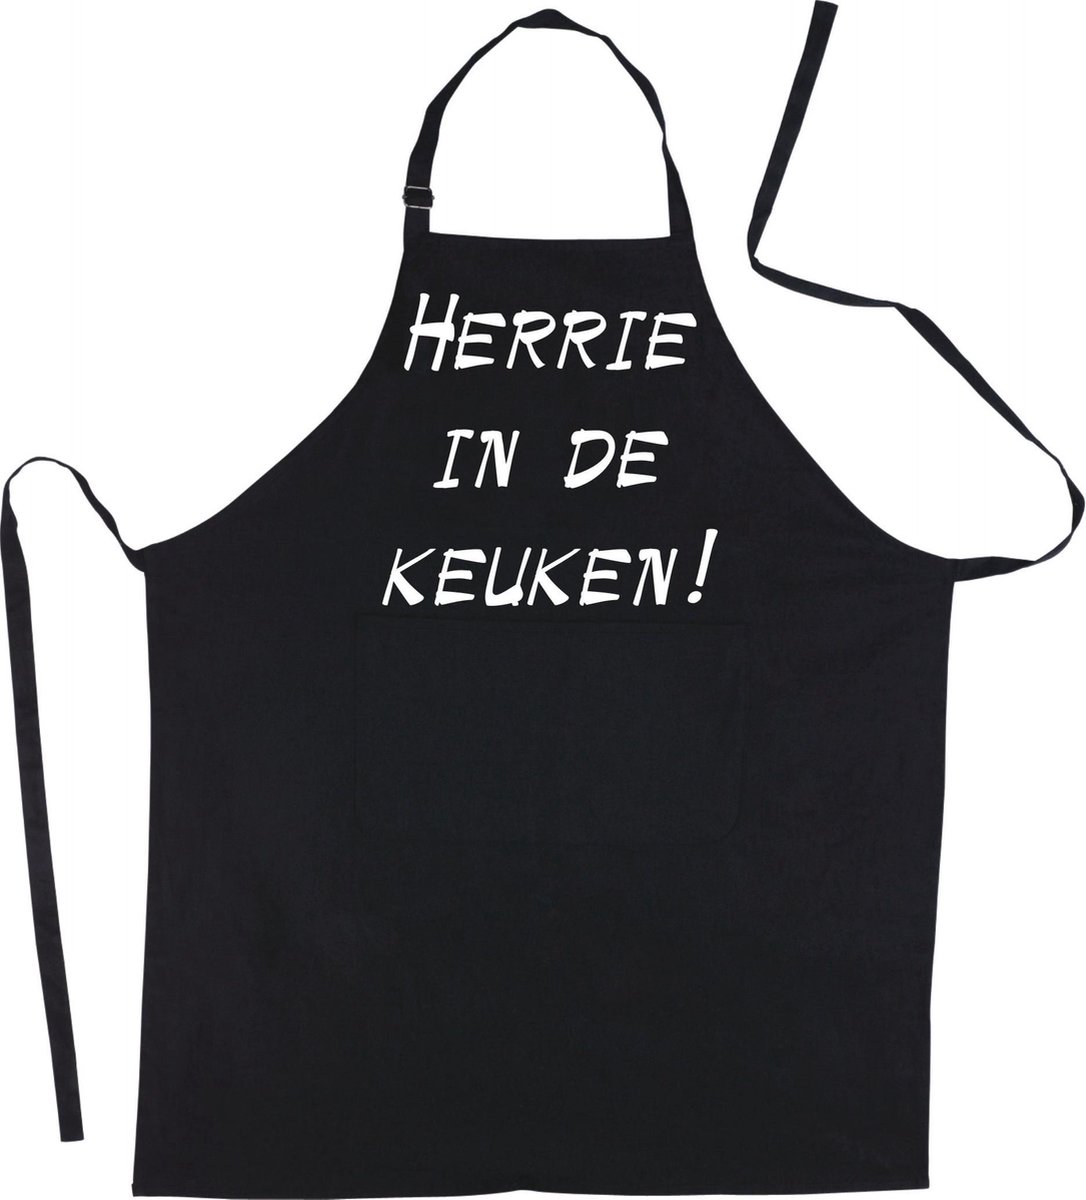 HERRIE IN DE KEUKEN! - Luxe keukenschort met tekst - Zwart